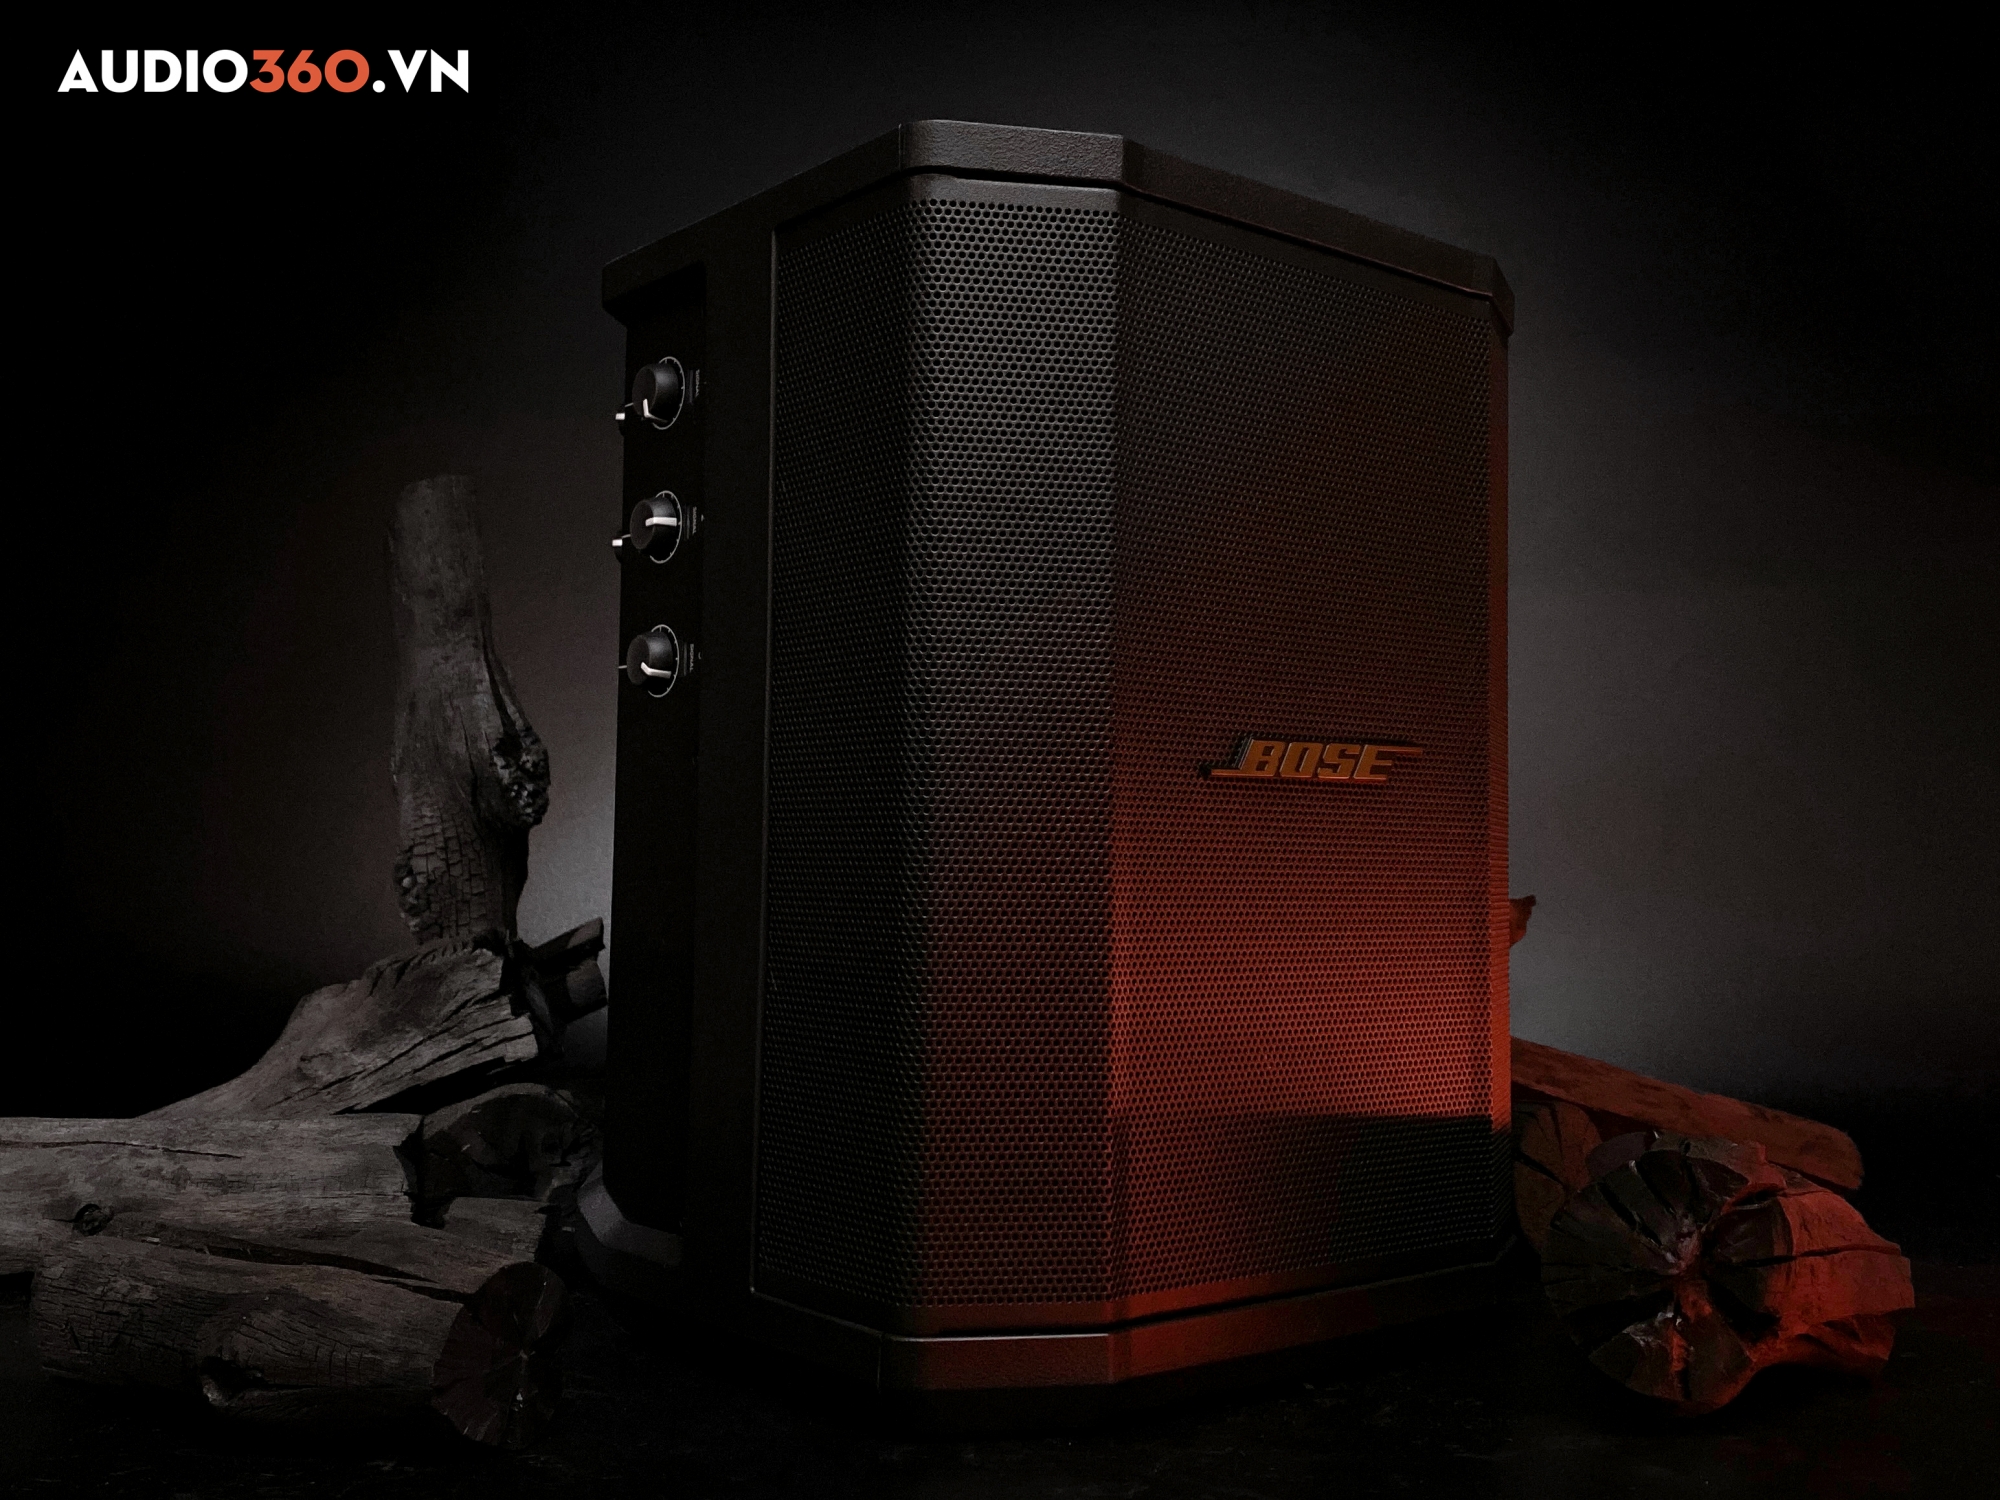 Loa Bose S1 Pro có hệ thống PA cung cấp chất âm cao cấp